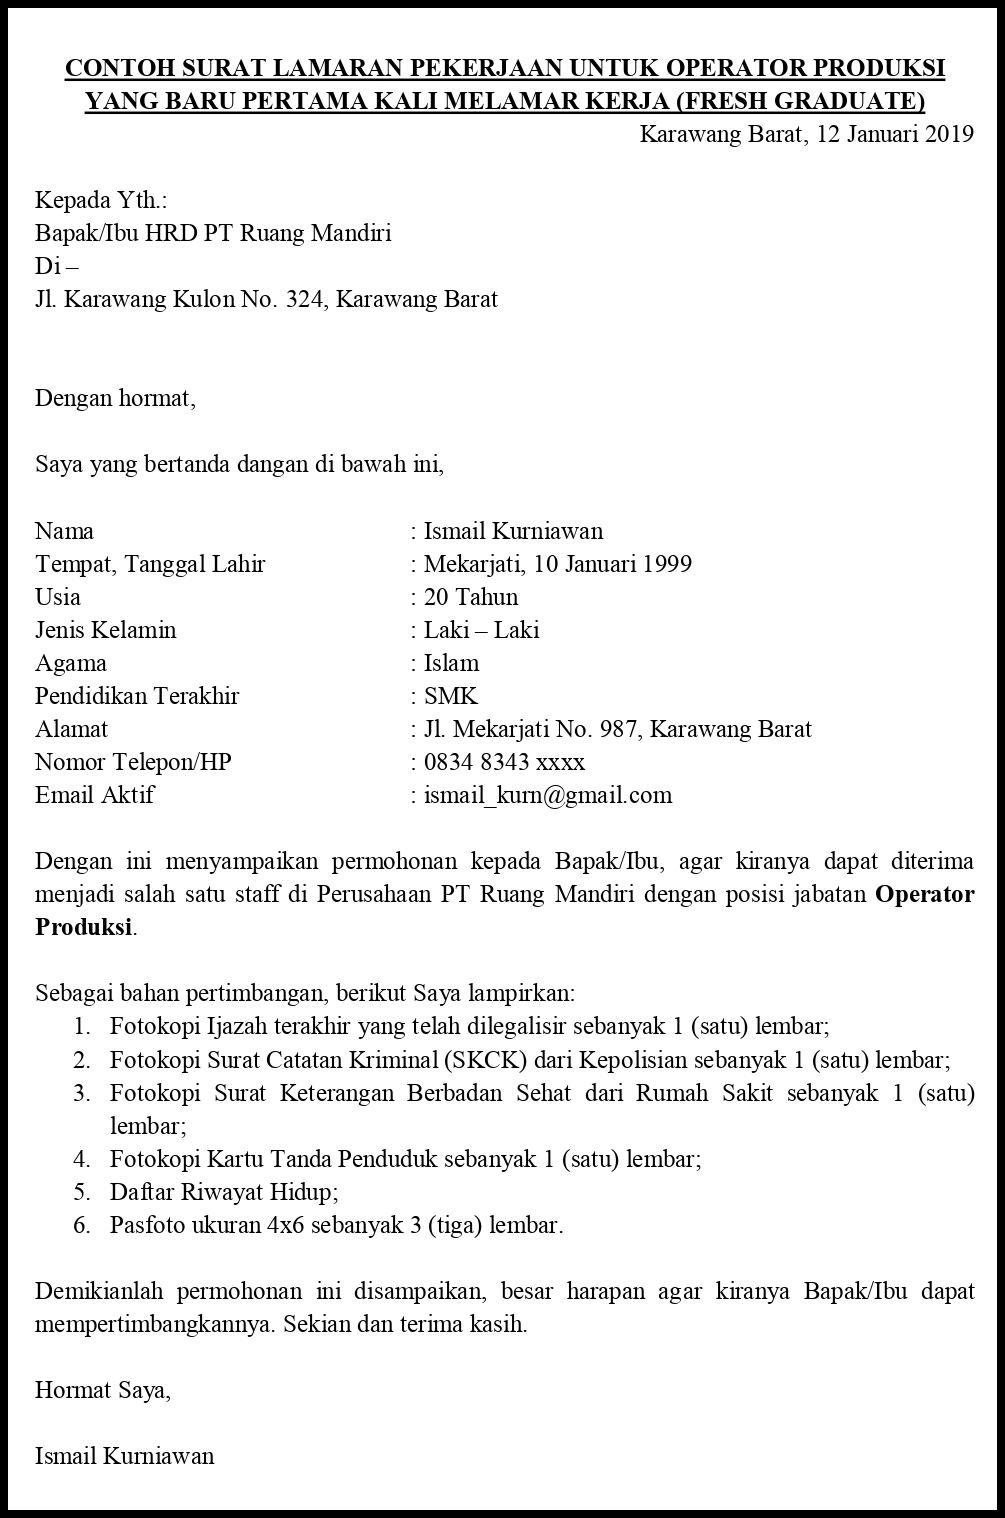 Contoh Surat Lamaran Dalam Bahasa Indonesia Lewat Email